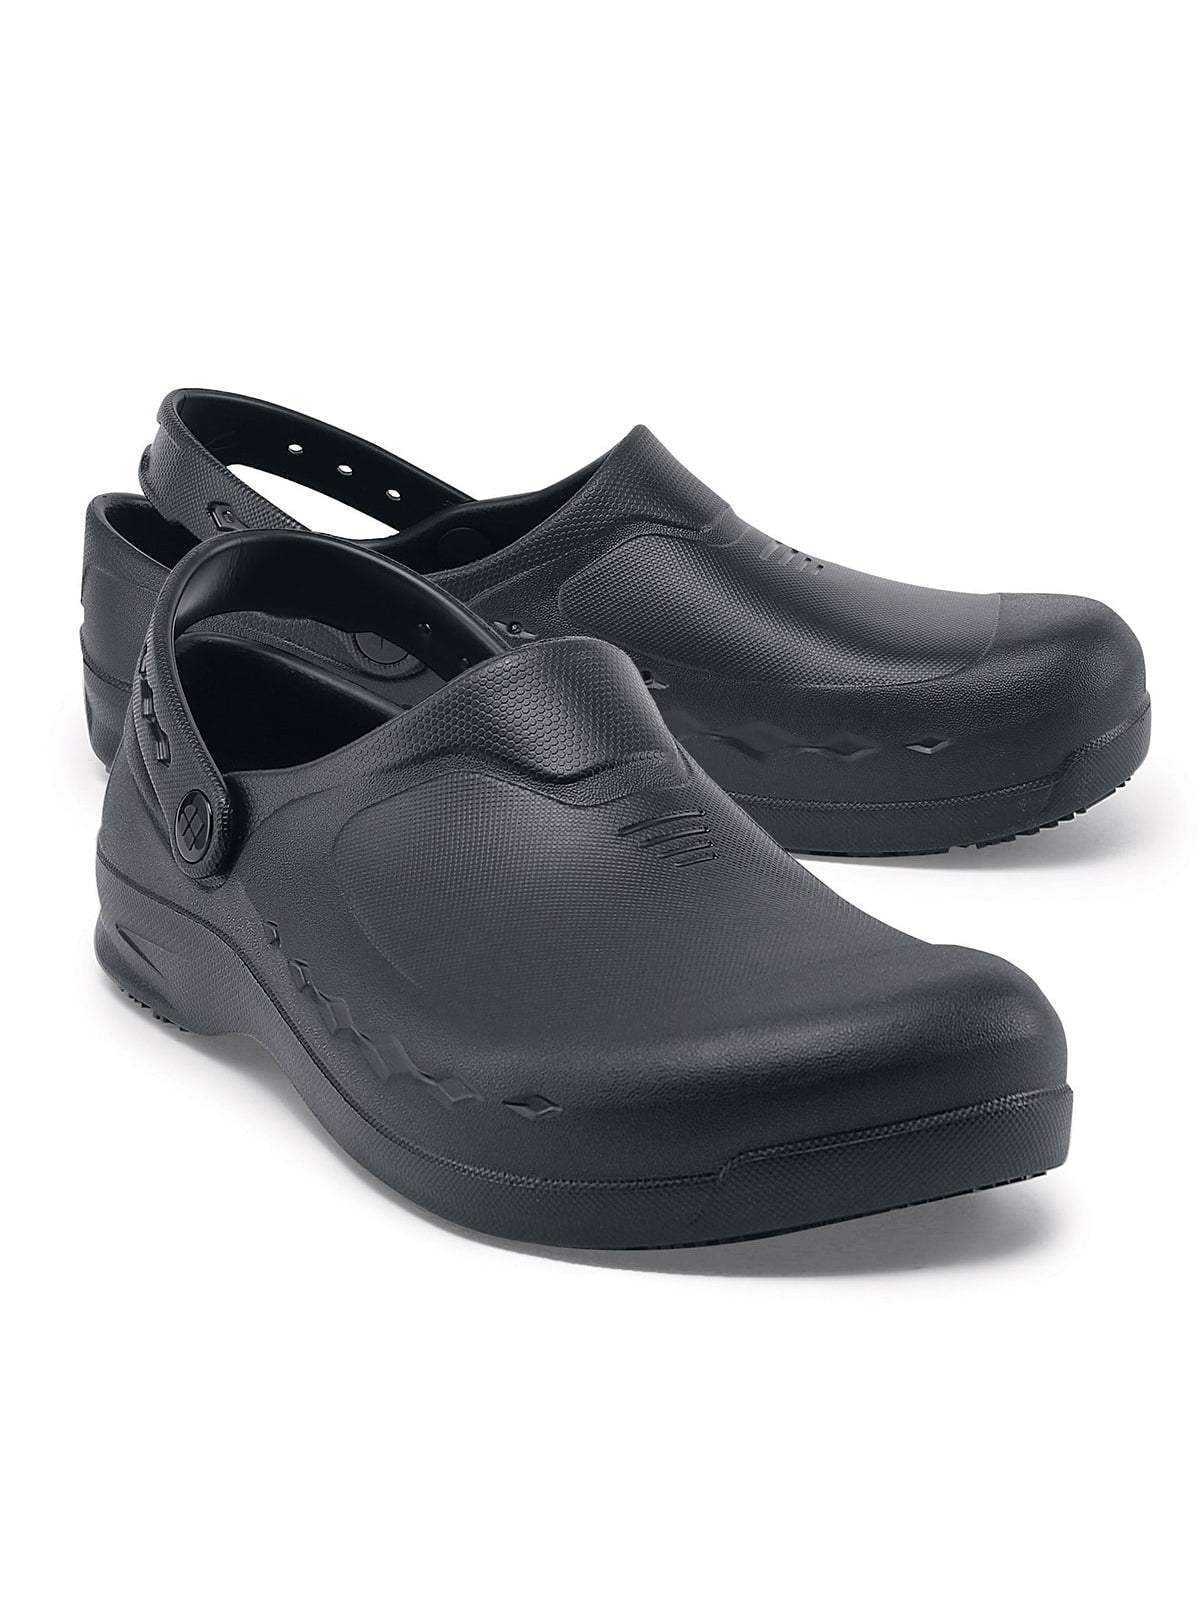 Unisex Work Shoe Zinc Black by  Shoes For Crews.